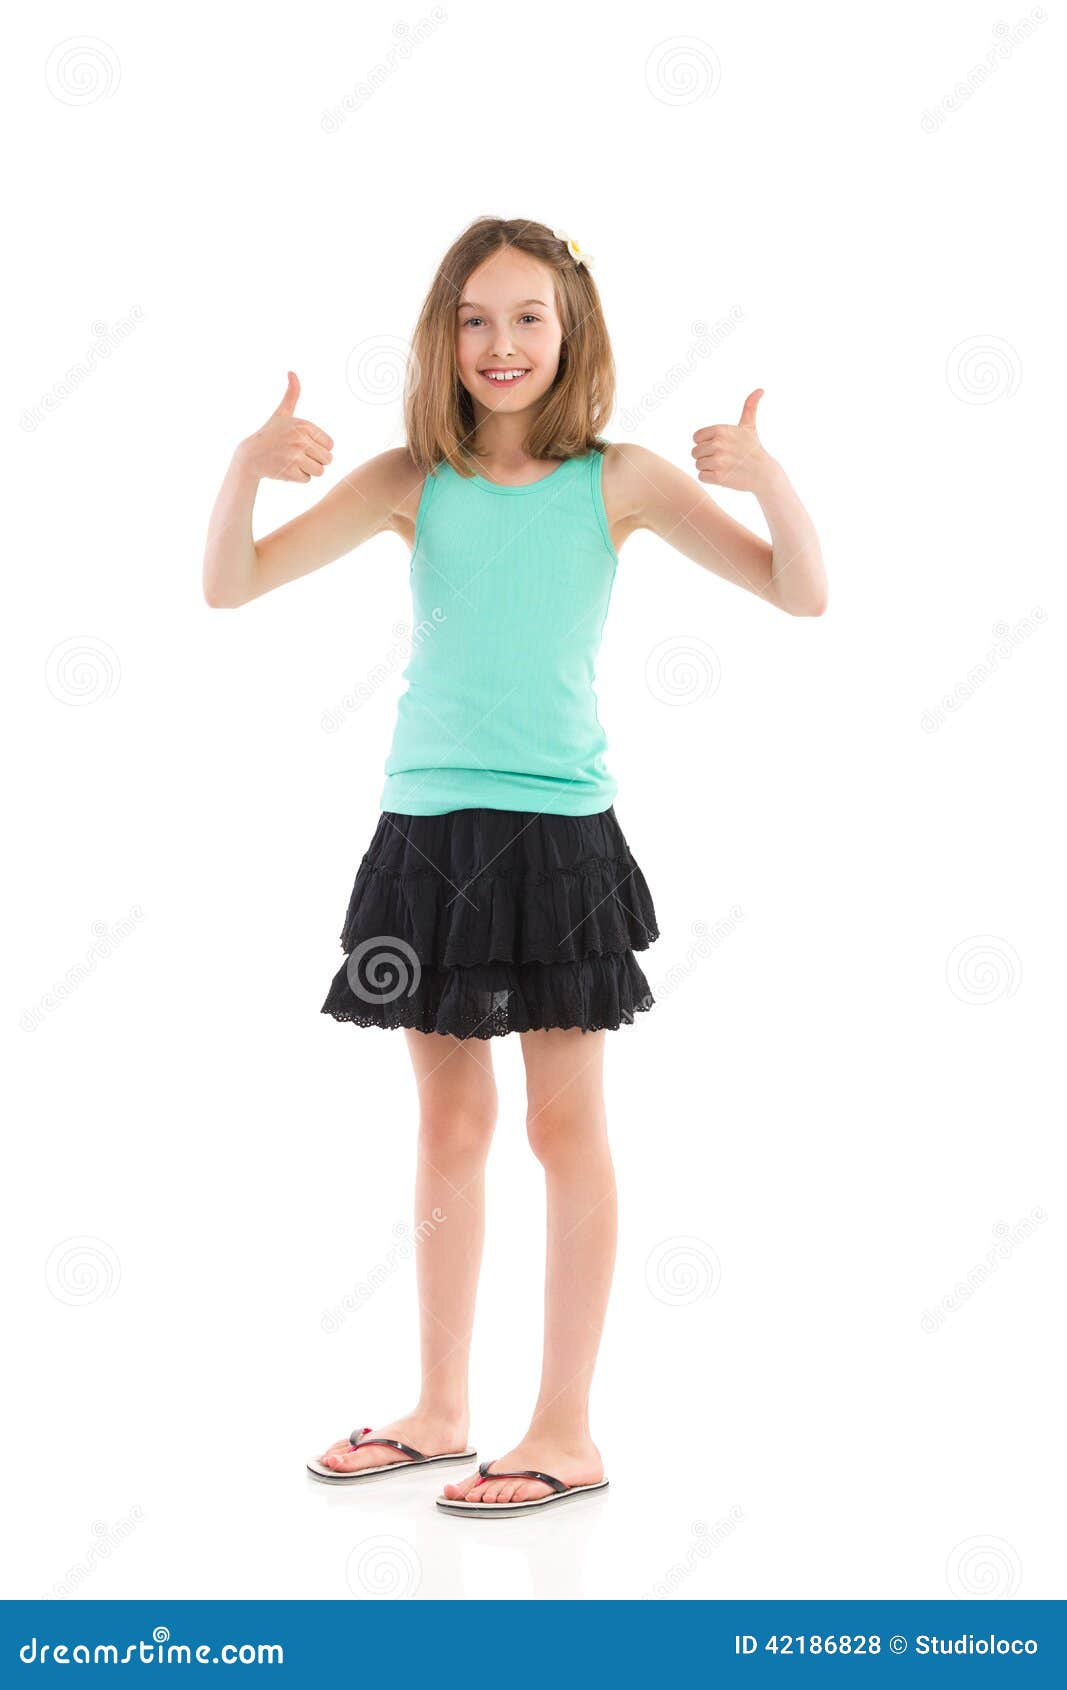 Girls mini skirts showing upskirt free